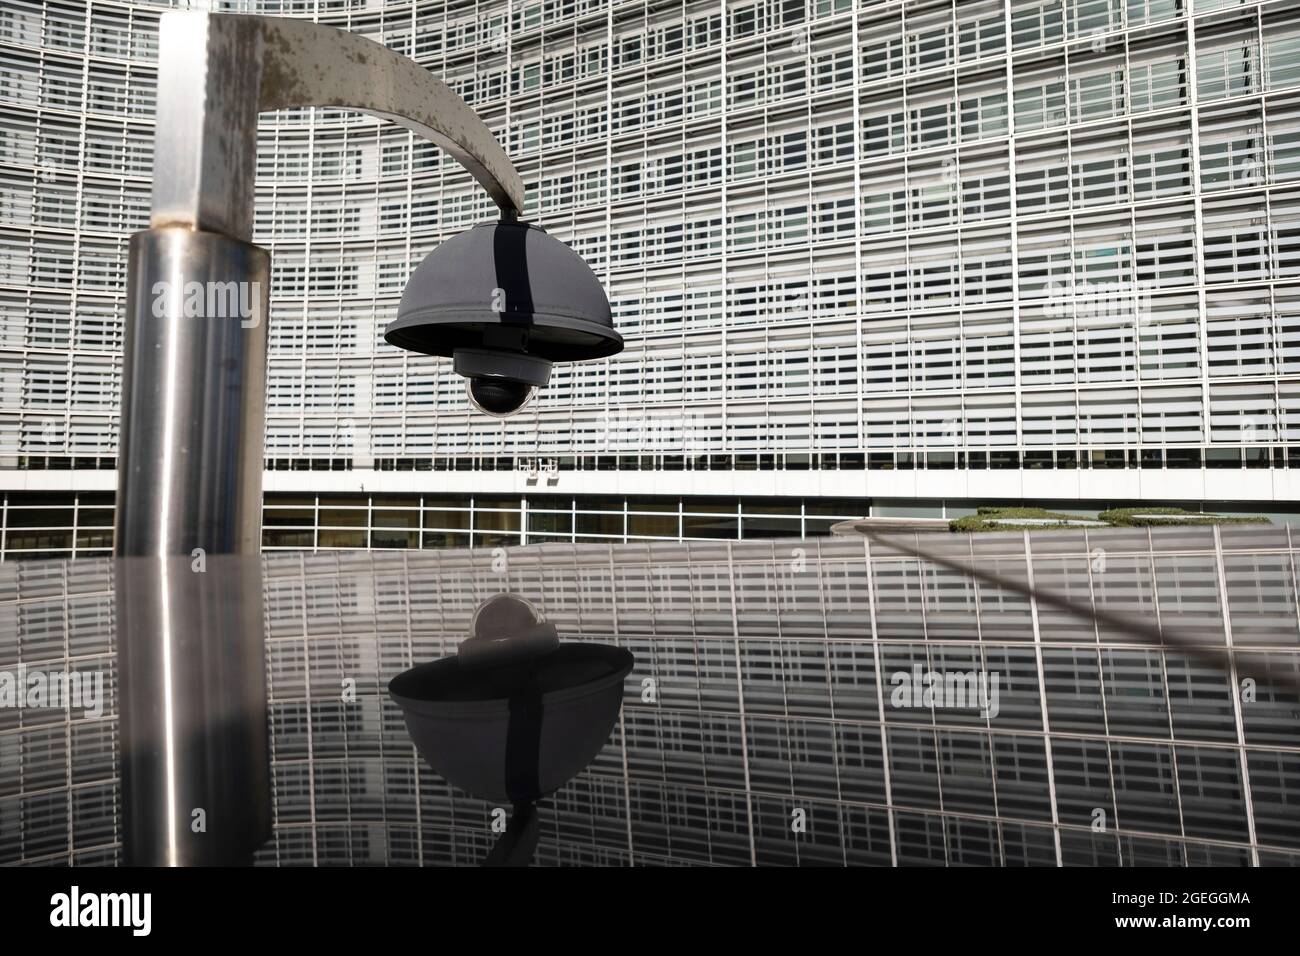 Belgique, Bruxelles: Caméra de vidéosurveillance en face du bâtiment Berlaymont, siège de la Commission européenne Banque D'Images